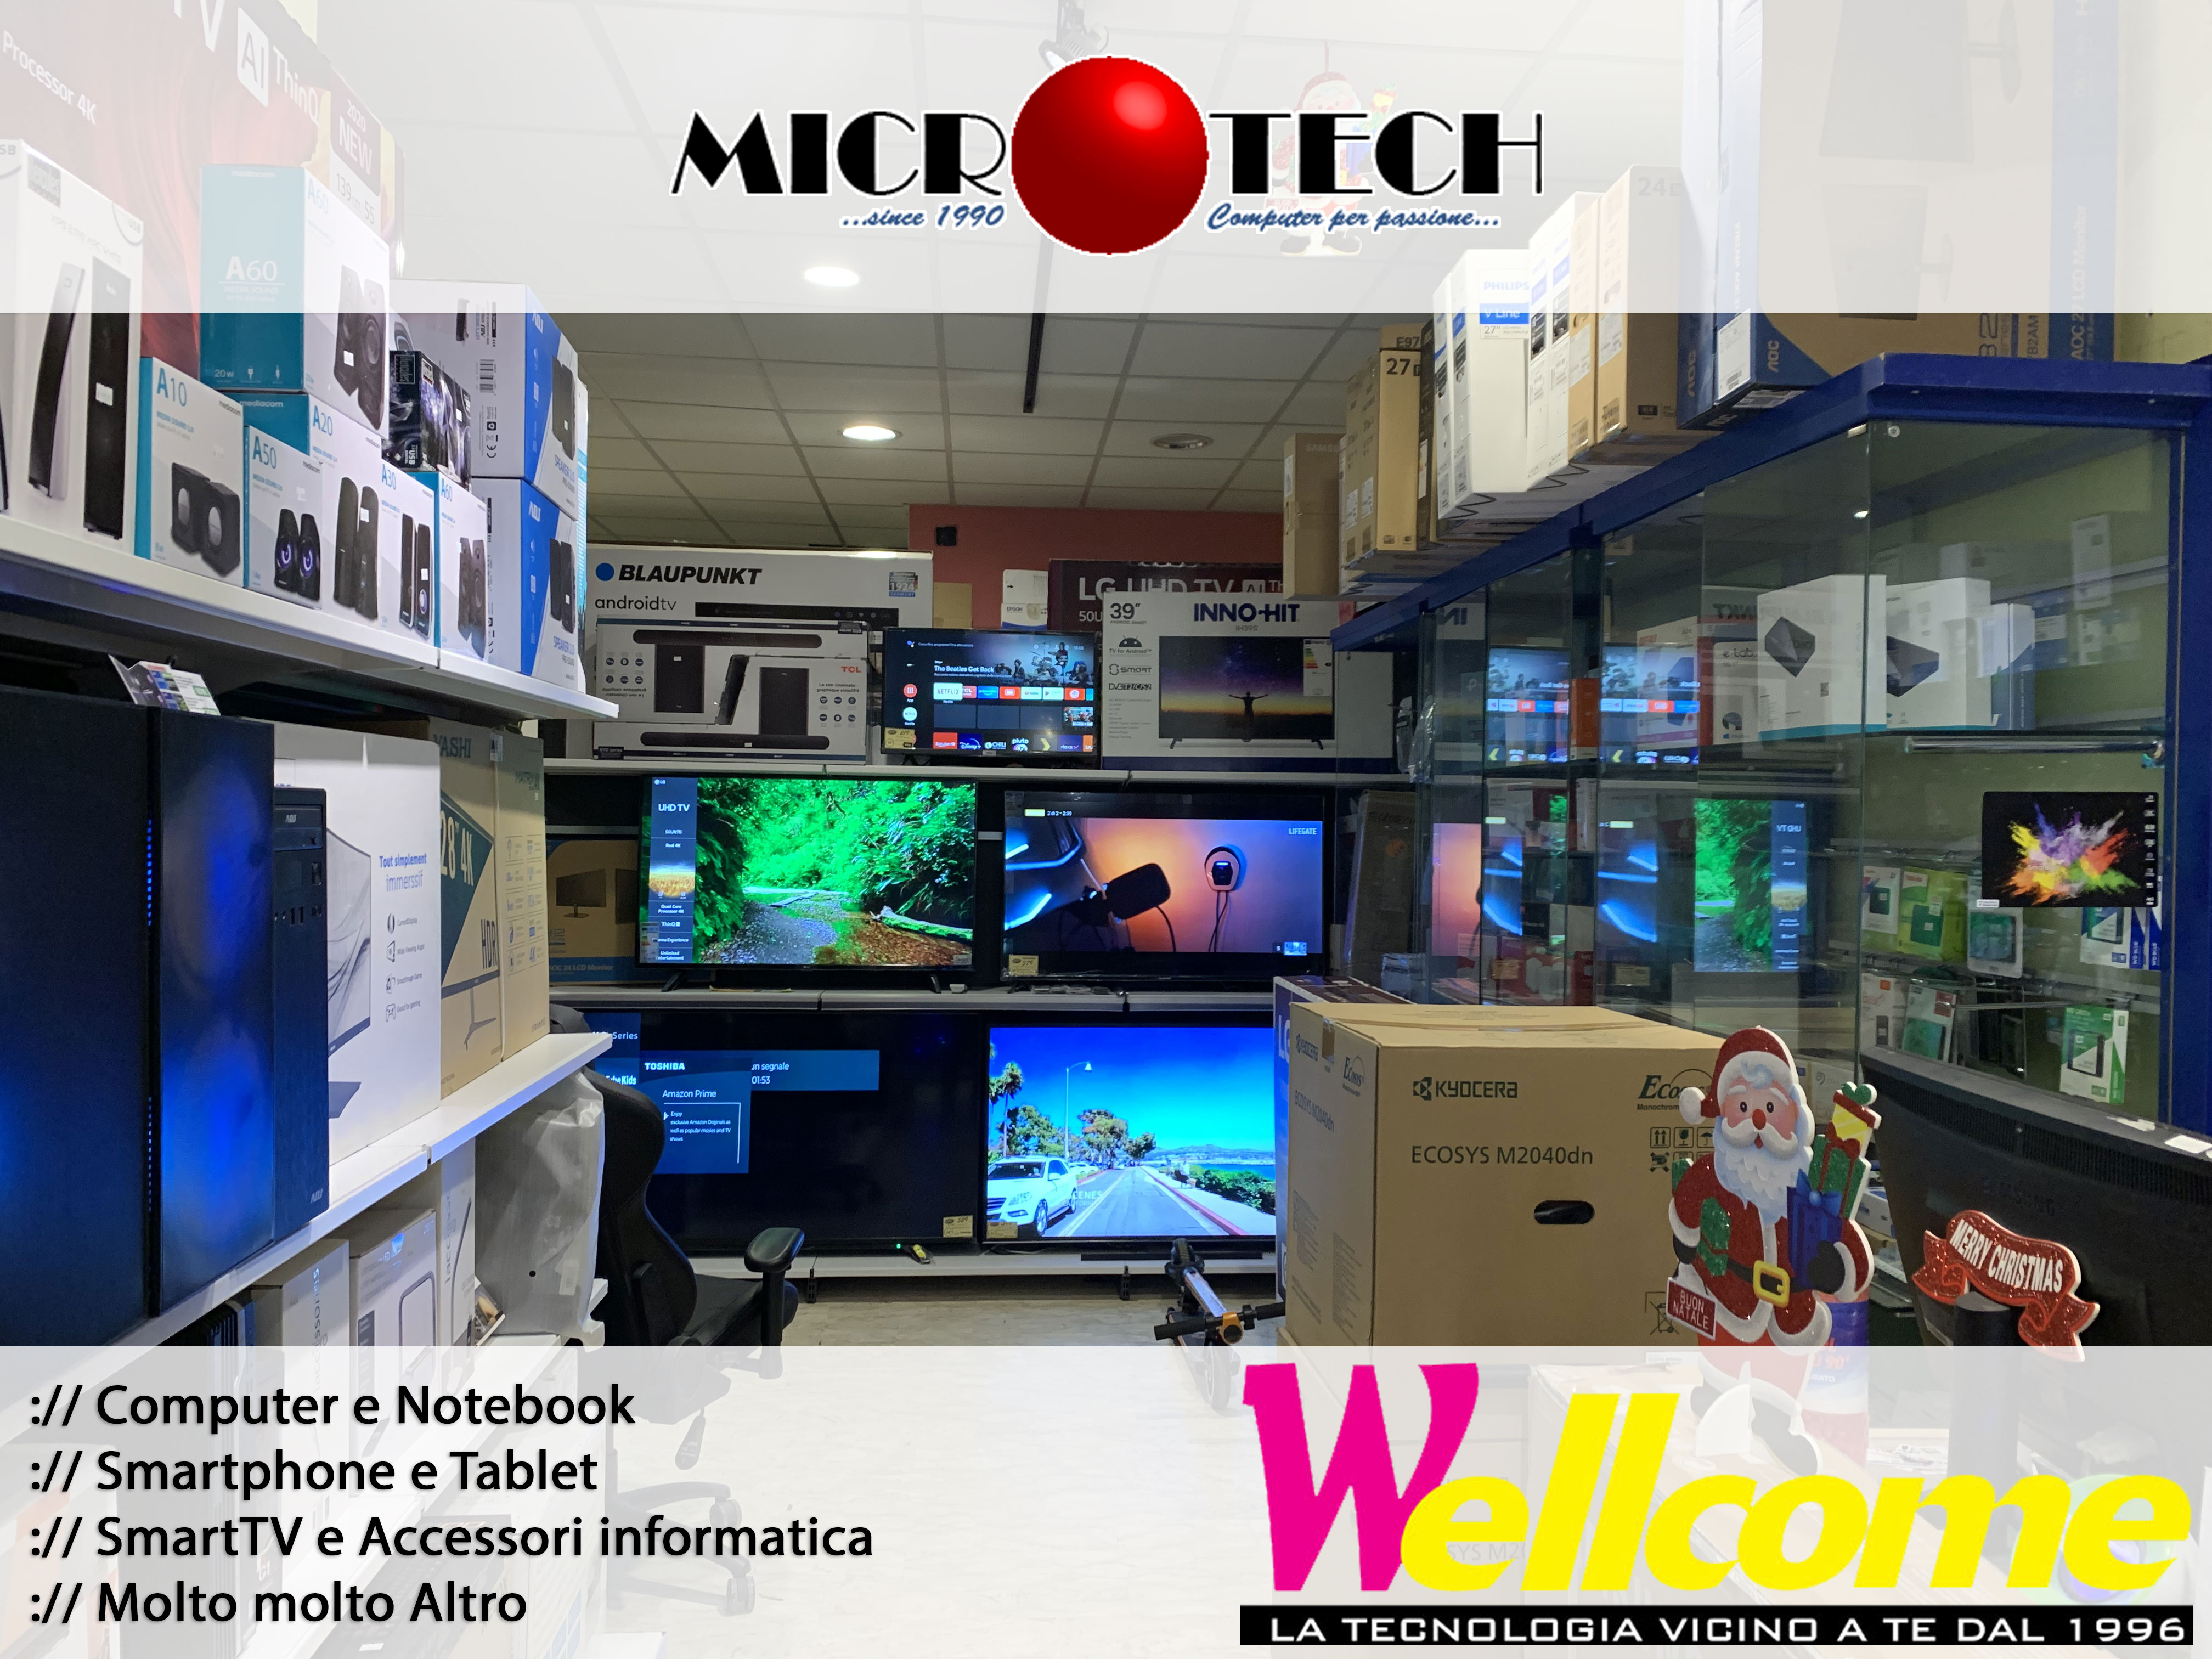 microtech cassino frosinone negozio di computer tablet offerte smartphone iphone samsung gaming pc offerte informatica